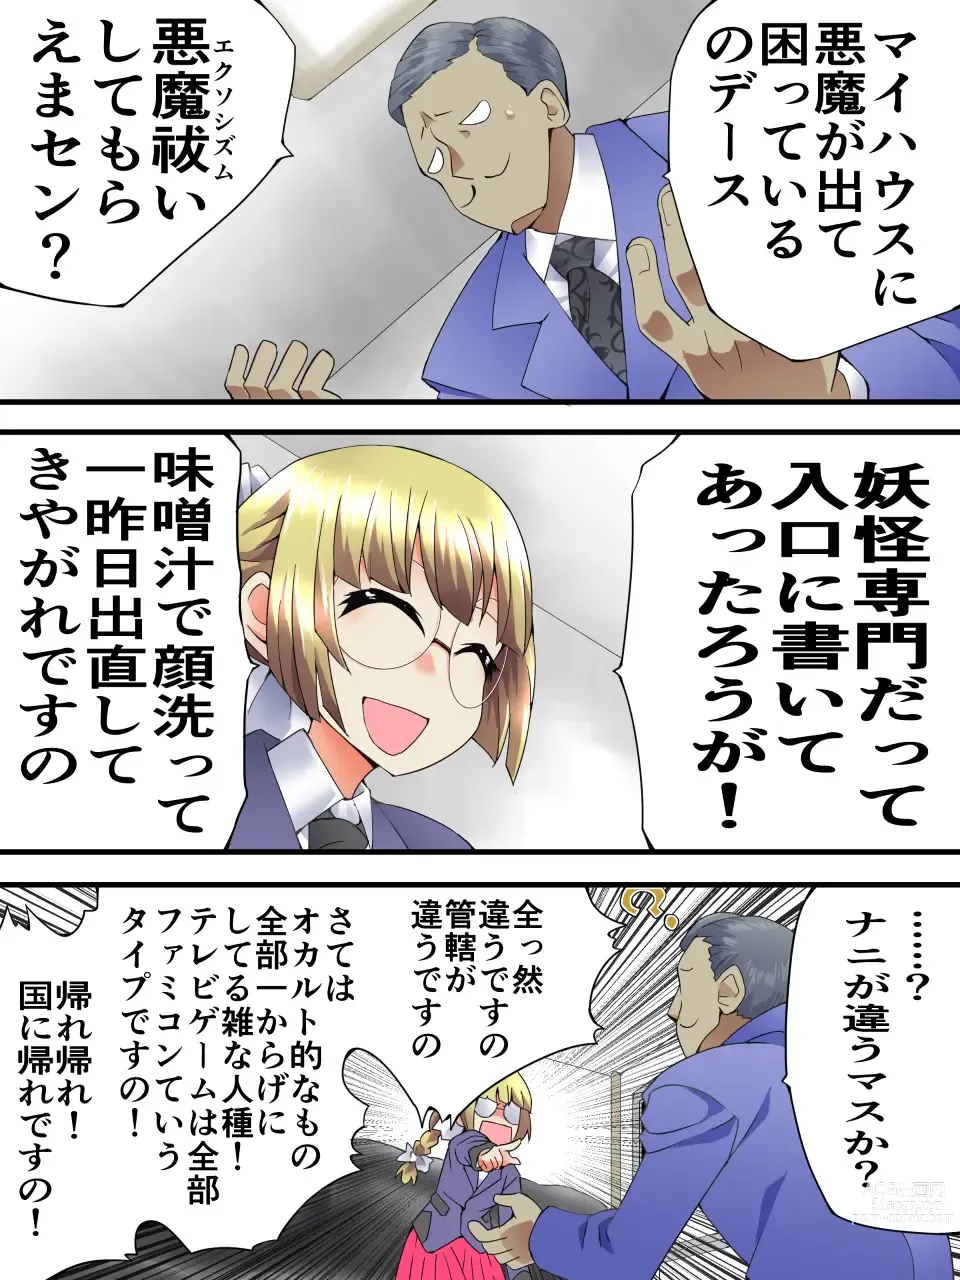 Page 4 of doujinshi Mysterious Detective Mito Kano Kagura Comes ~Detective vs Devil Worshiper~